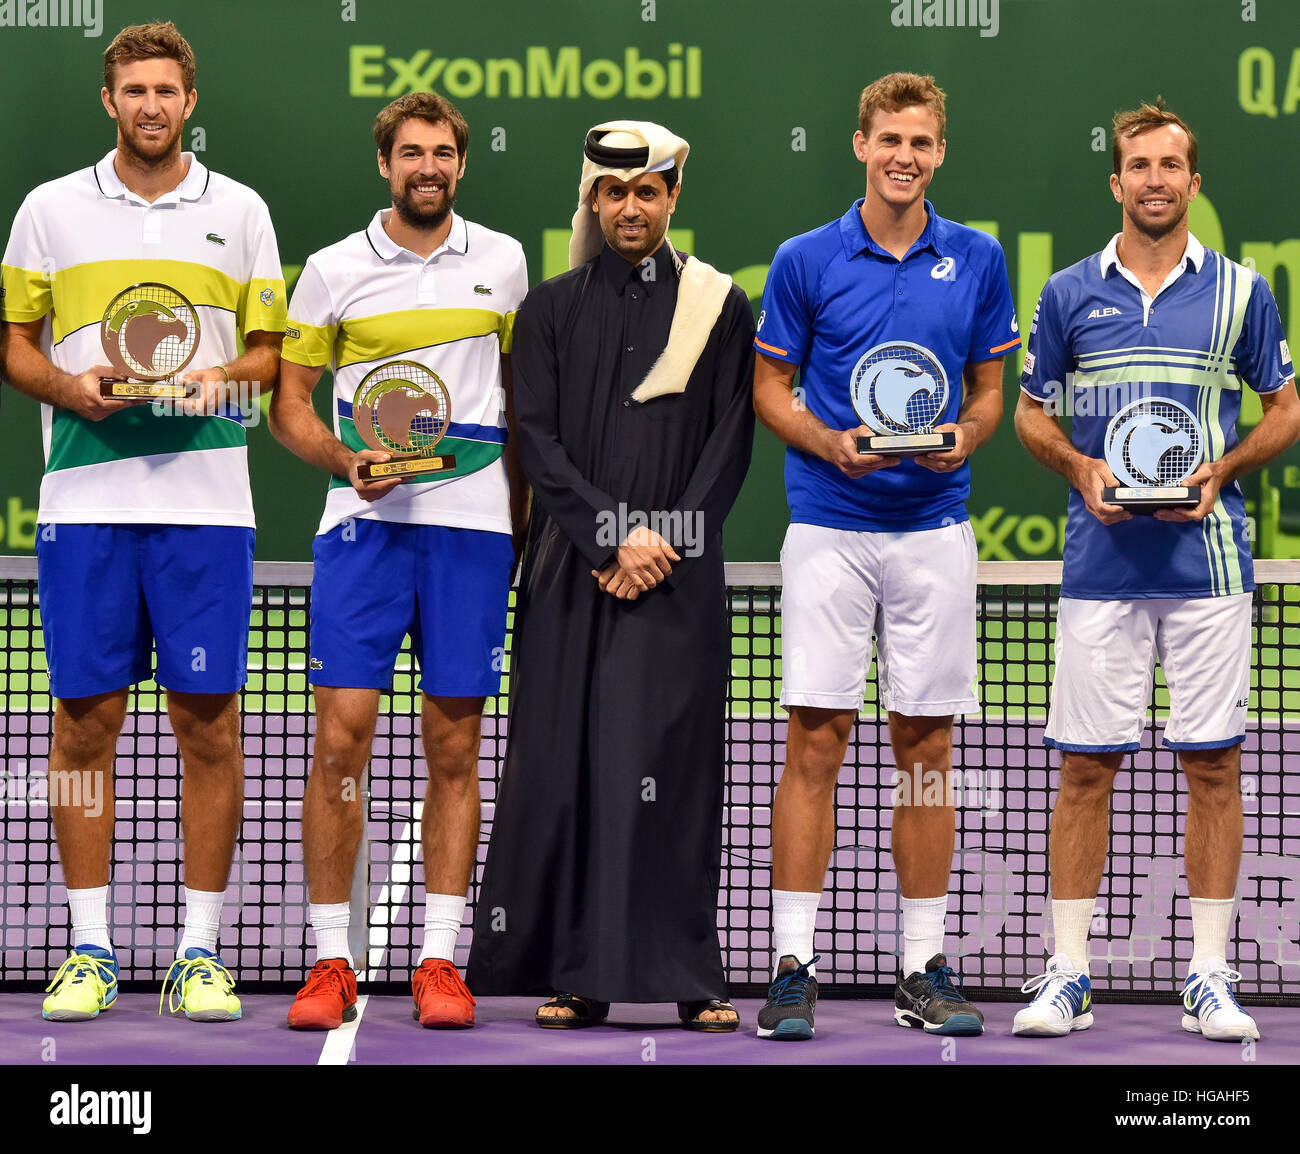 President Qatar Tennis Federation Al Khelaifi Stockfotos Und Bilder Kaufen Alamy